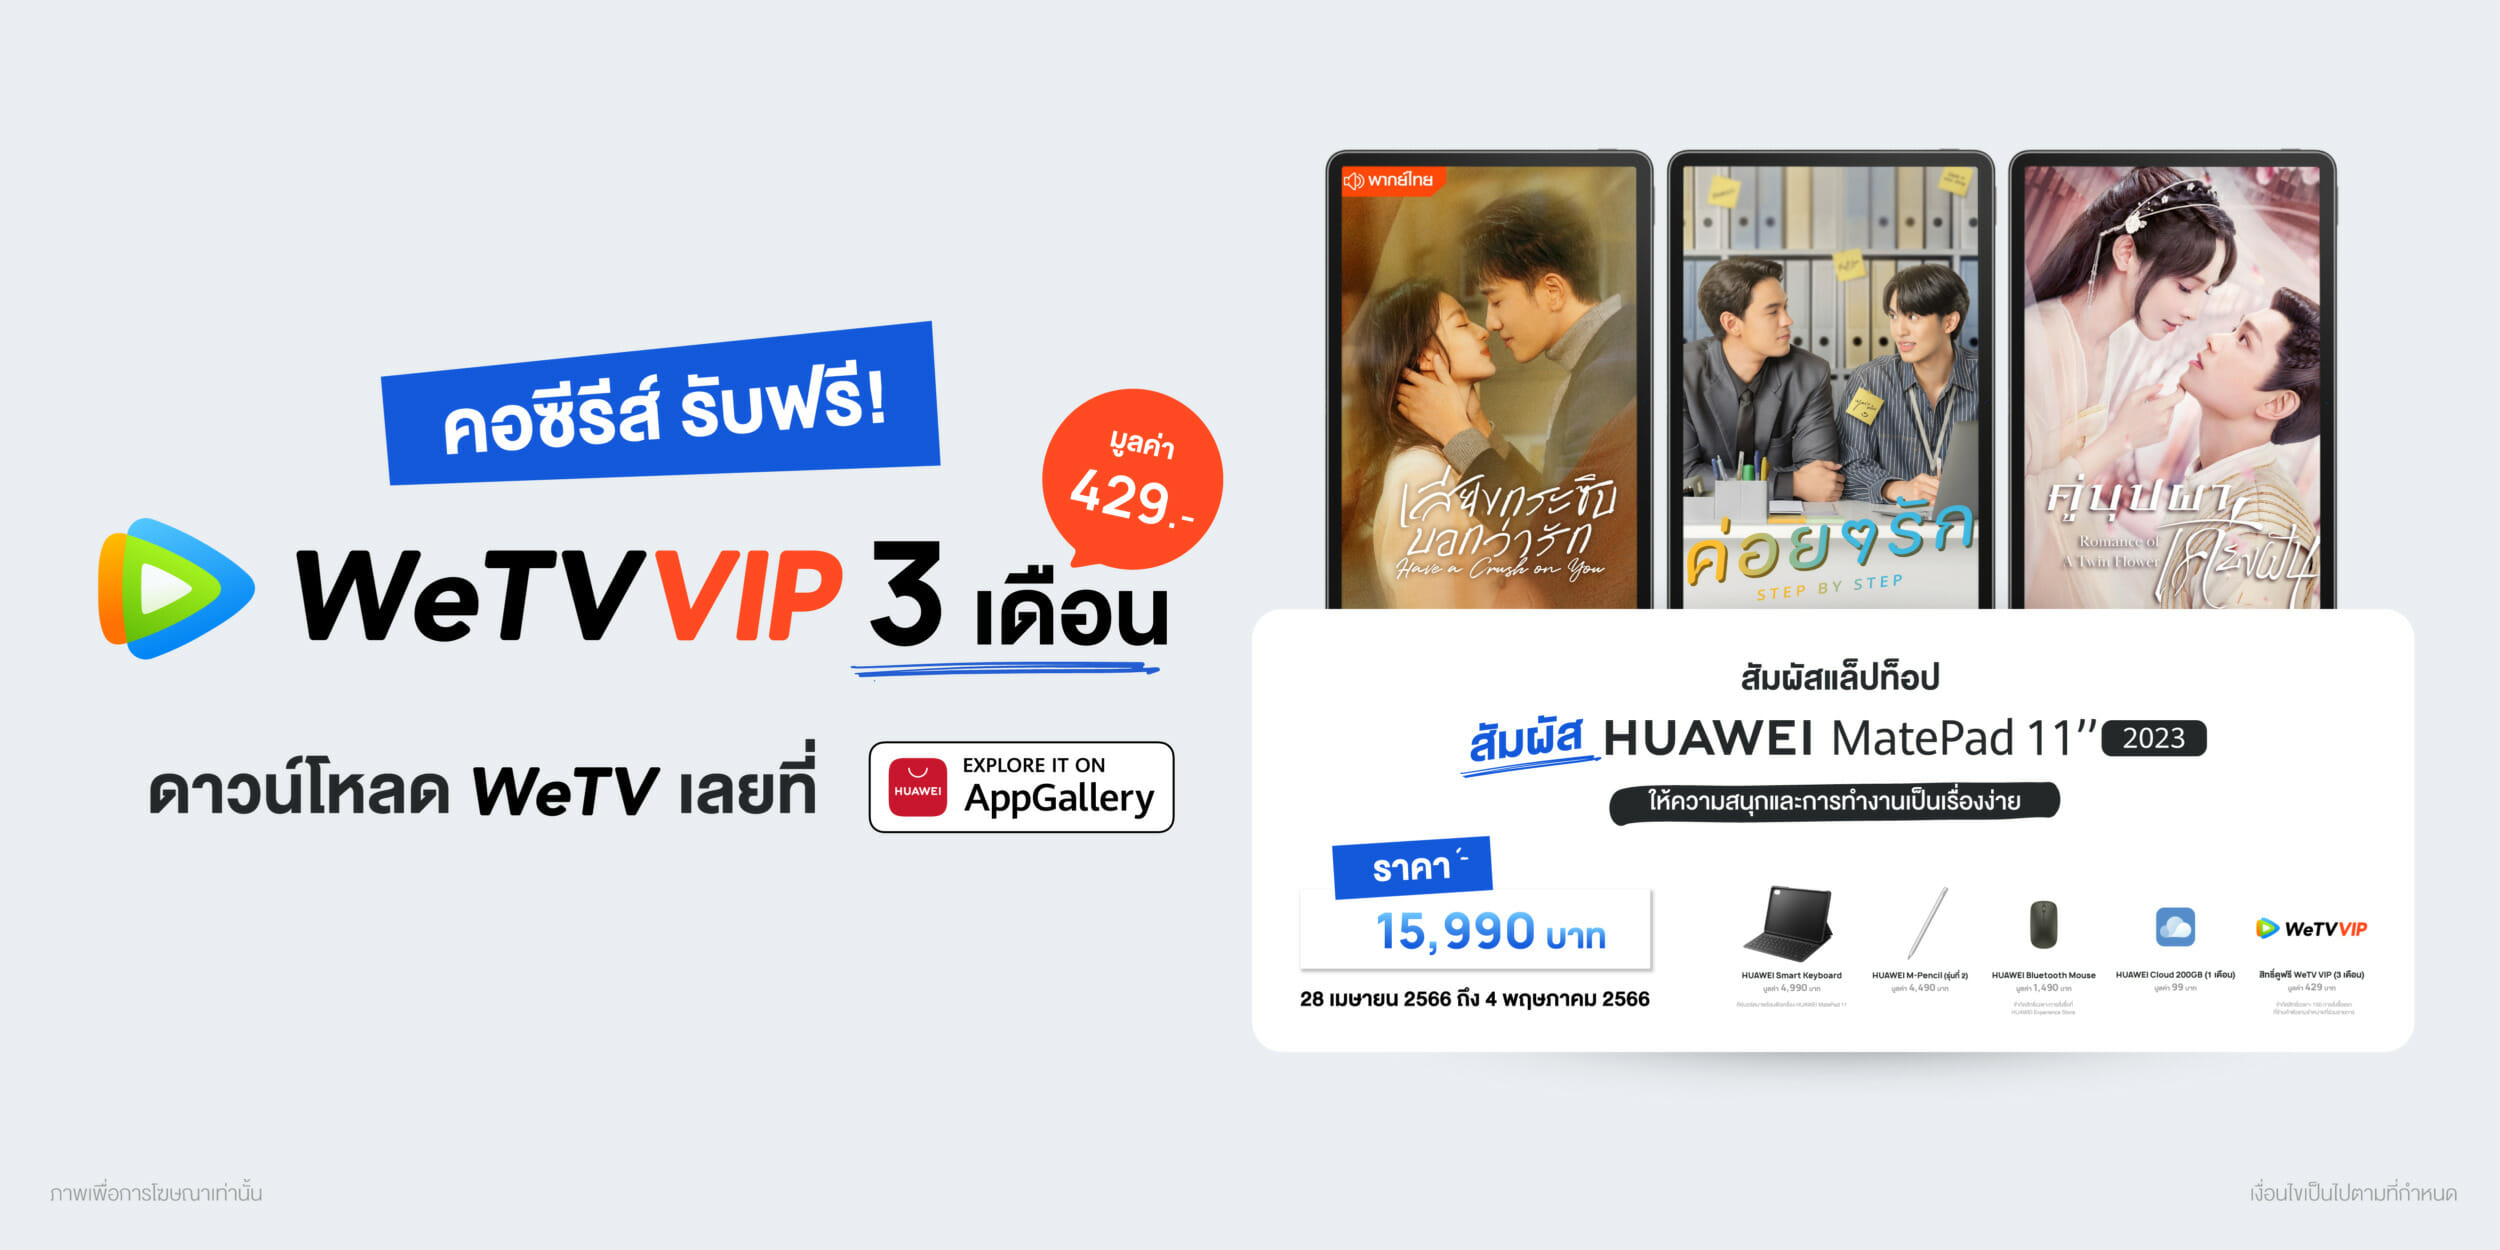 หัวเว่ยจับมือ WeTV ซื้อ HUAWEI MatePad 11 2023 รับสิทธิ์ฟรี WeTV VIP 3 เดือน 1